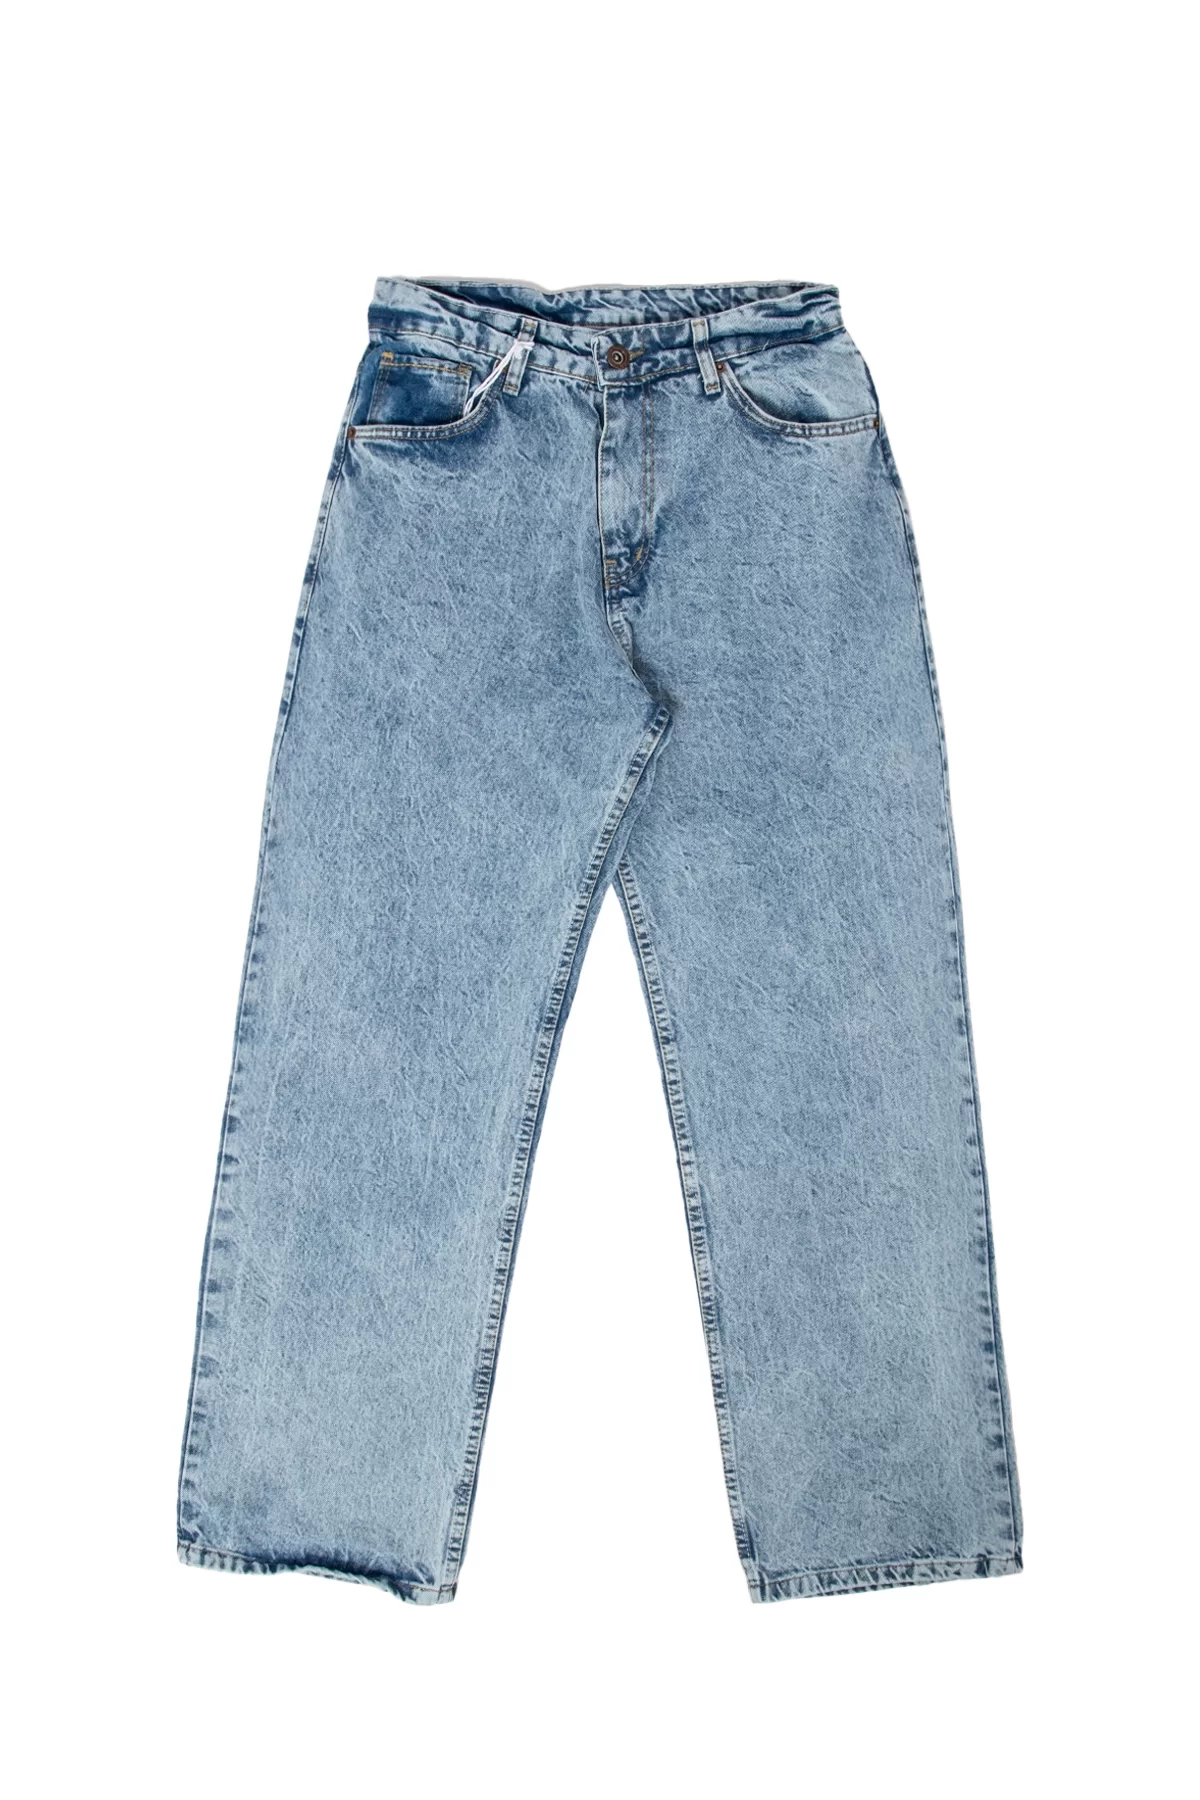 Buz Mavisi Yıkamalı Baggy Fit Premium Pantolon